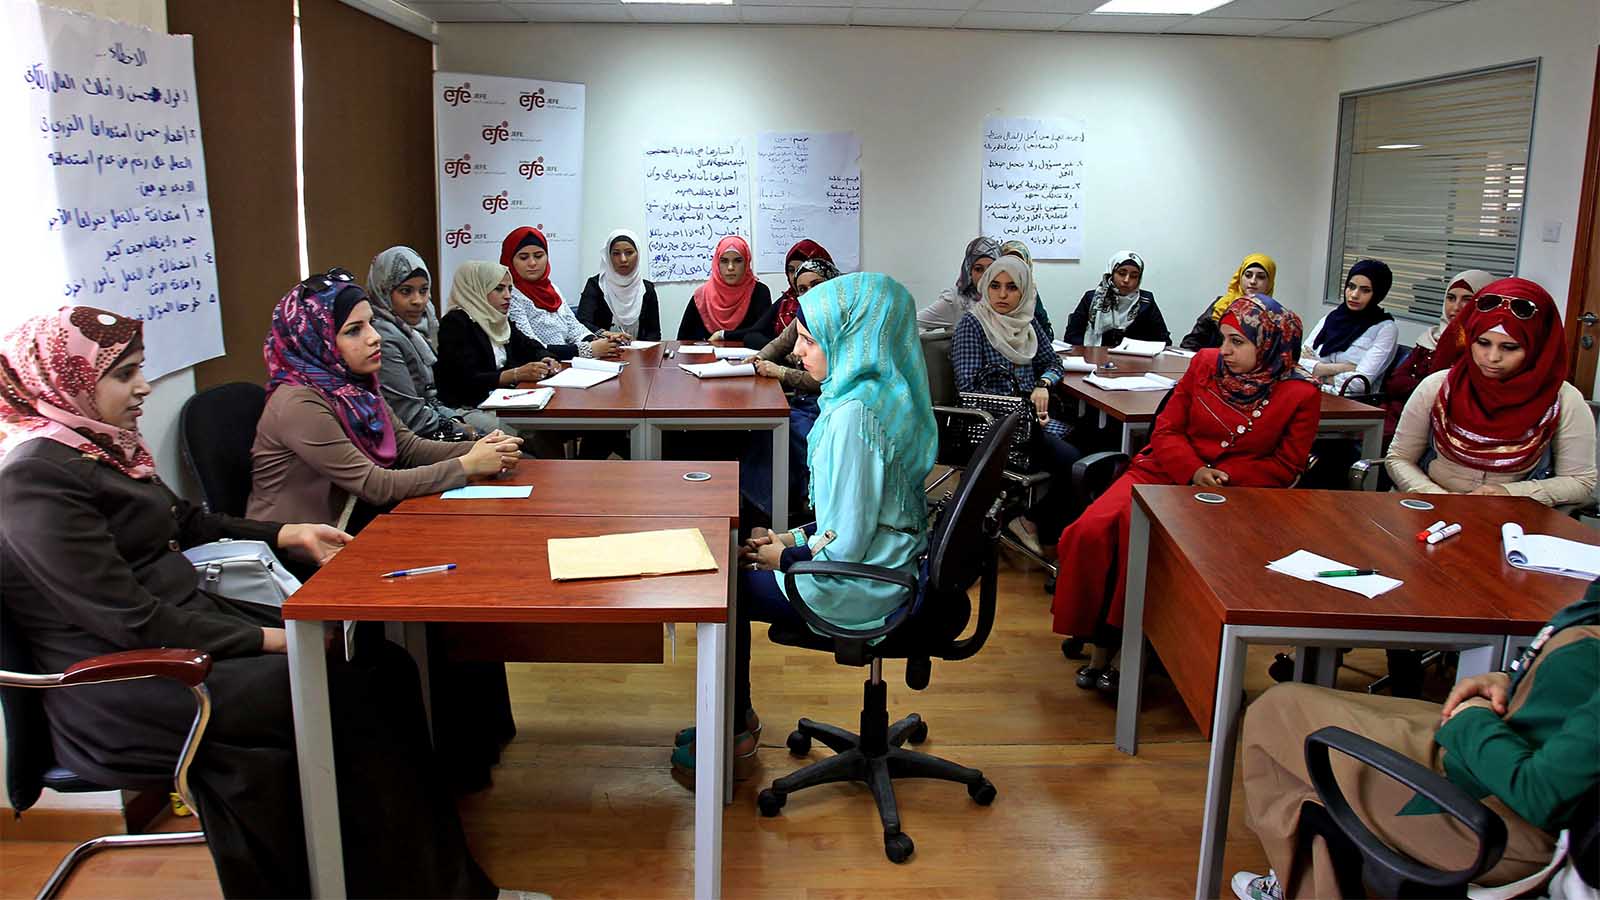 נשים ירדניות בתכנית הכשרה לראיונות עבודה בלשכת העבודה הירדנית. ארכיון (צילום: AP Photo/Raad Adayleh)